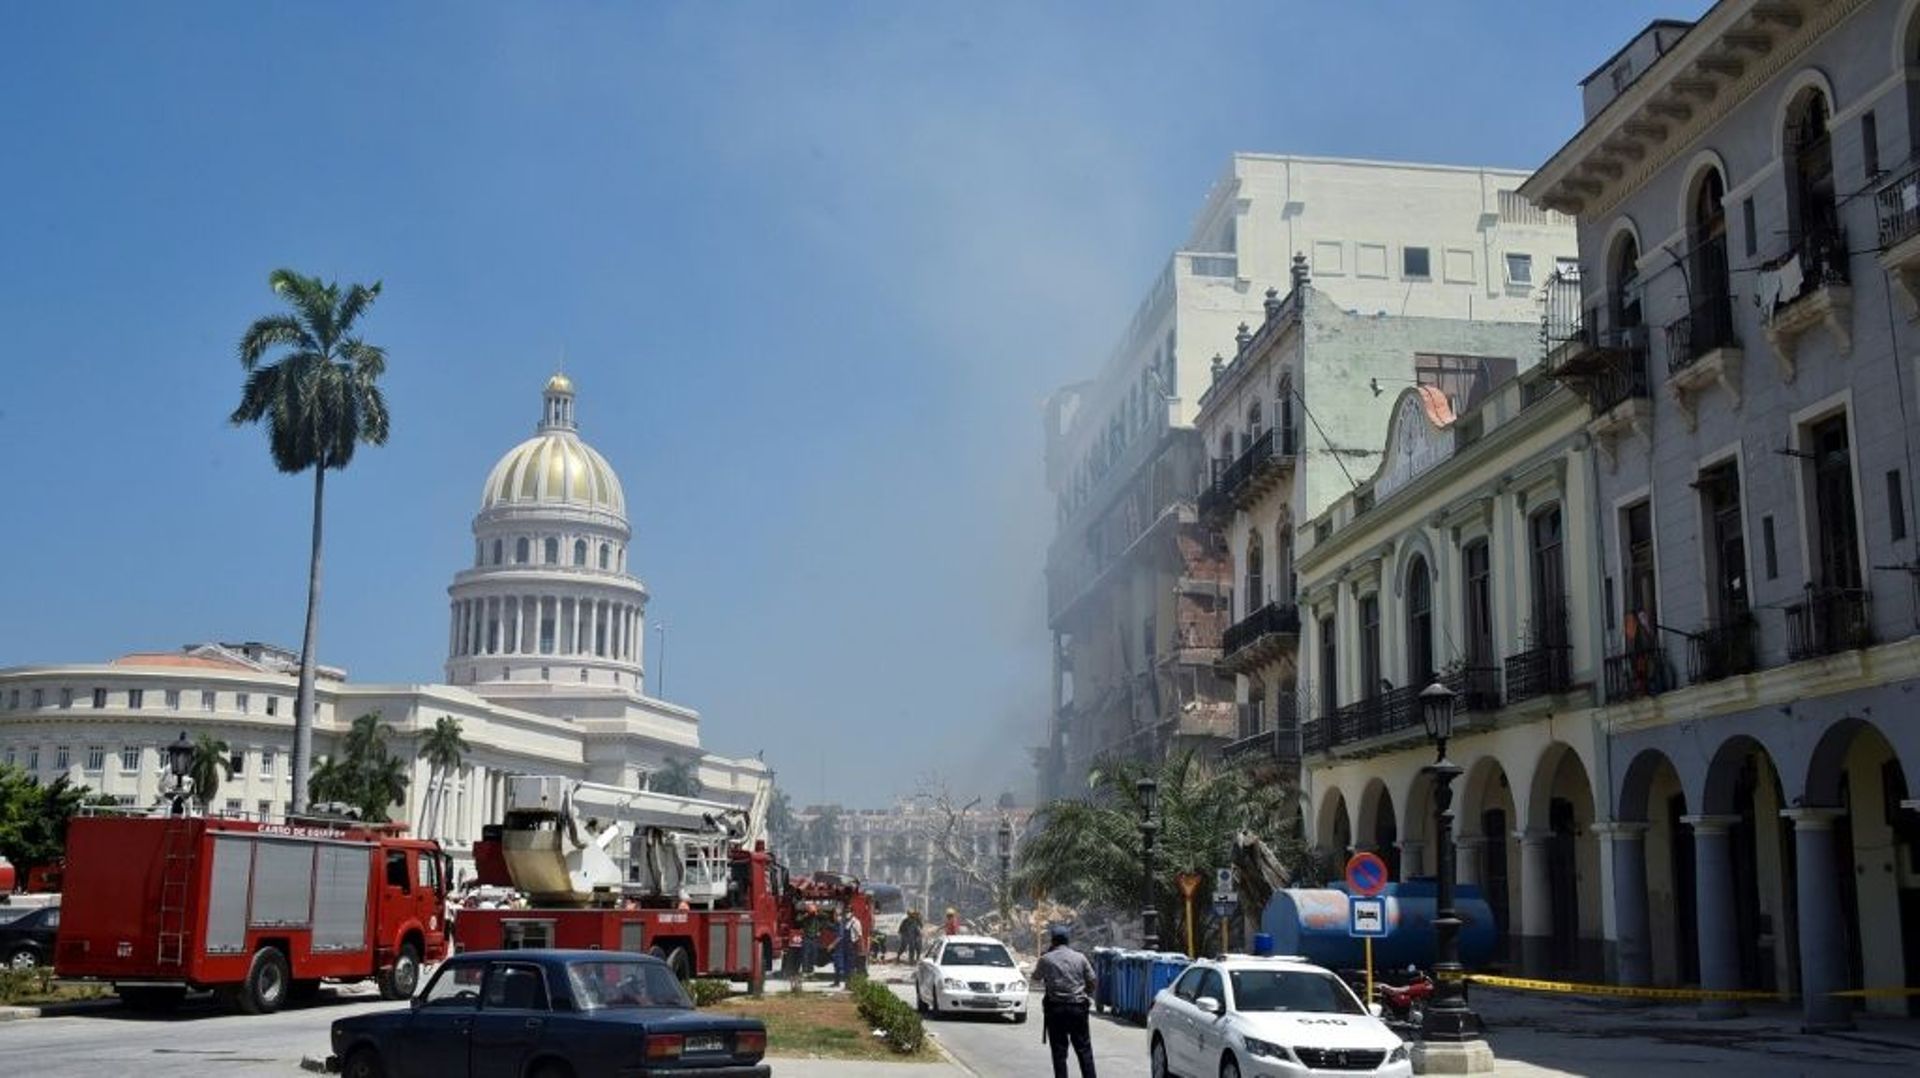 Des équipes de secours sur les lieux d’une explosion survenue dans l’hôtel Saratoga en travaux, le 6 mai 2022 à La Havane, à Cuba